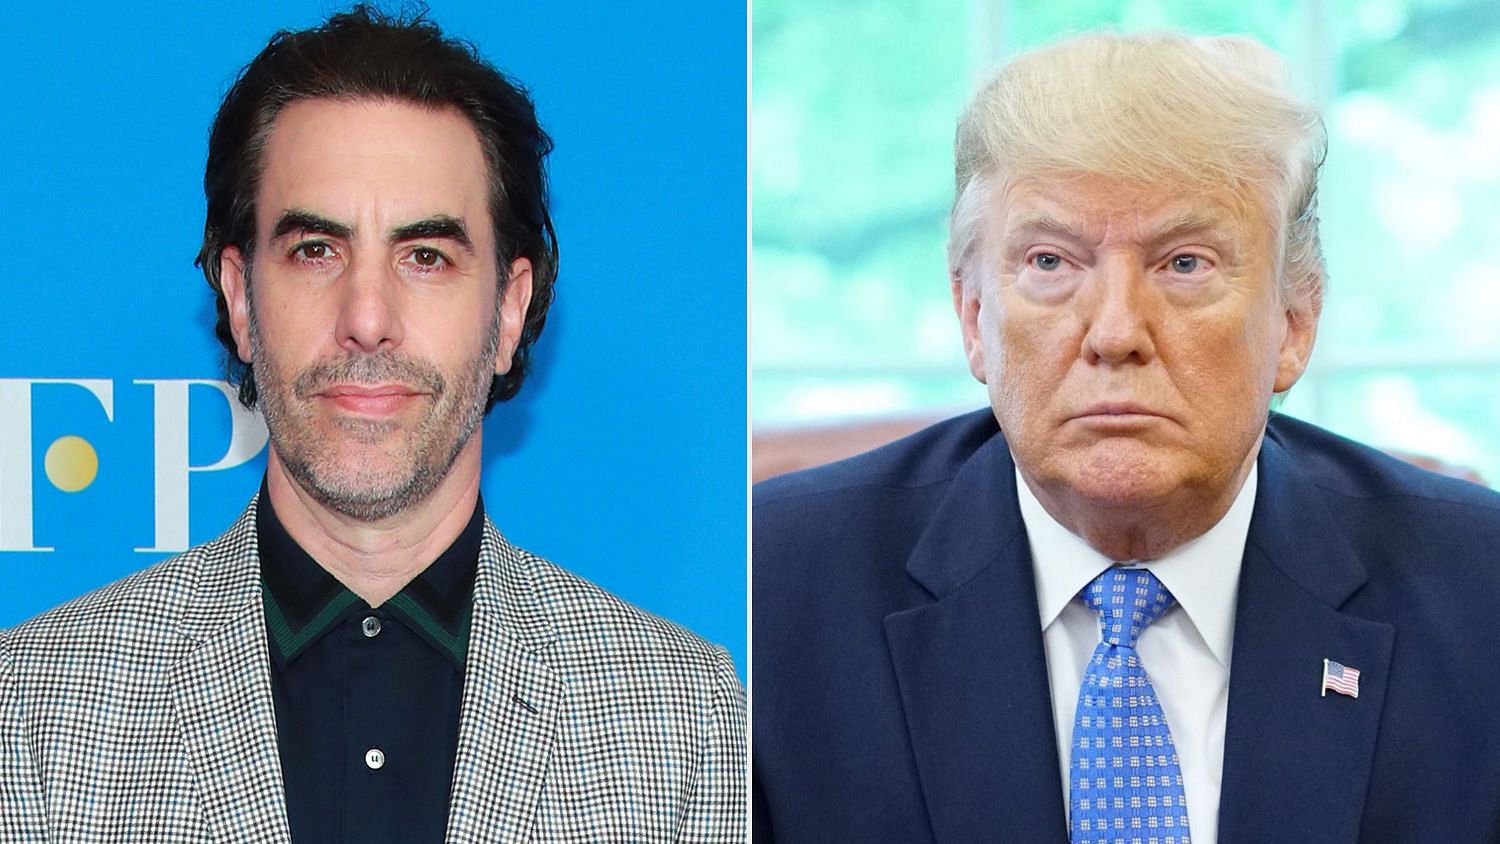 Sacha Baron Cohen has hit back at US President Donald Trump.